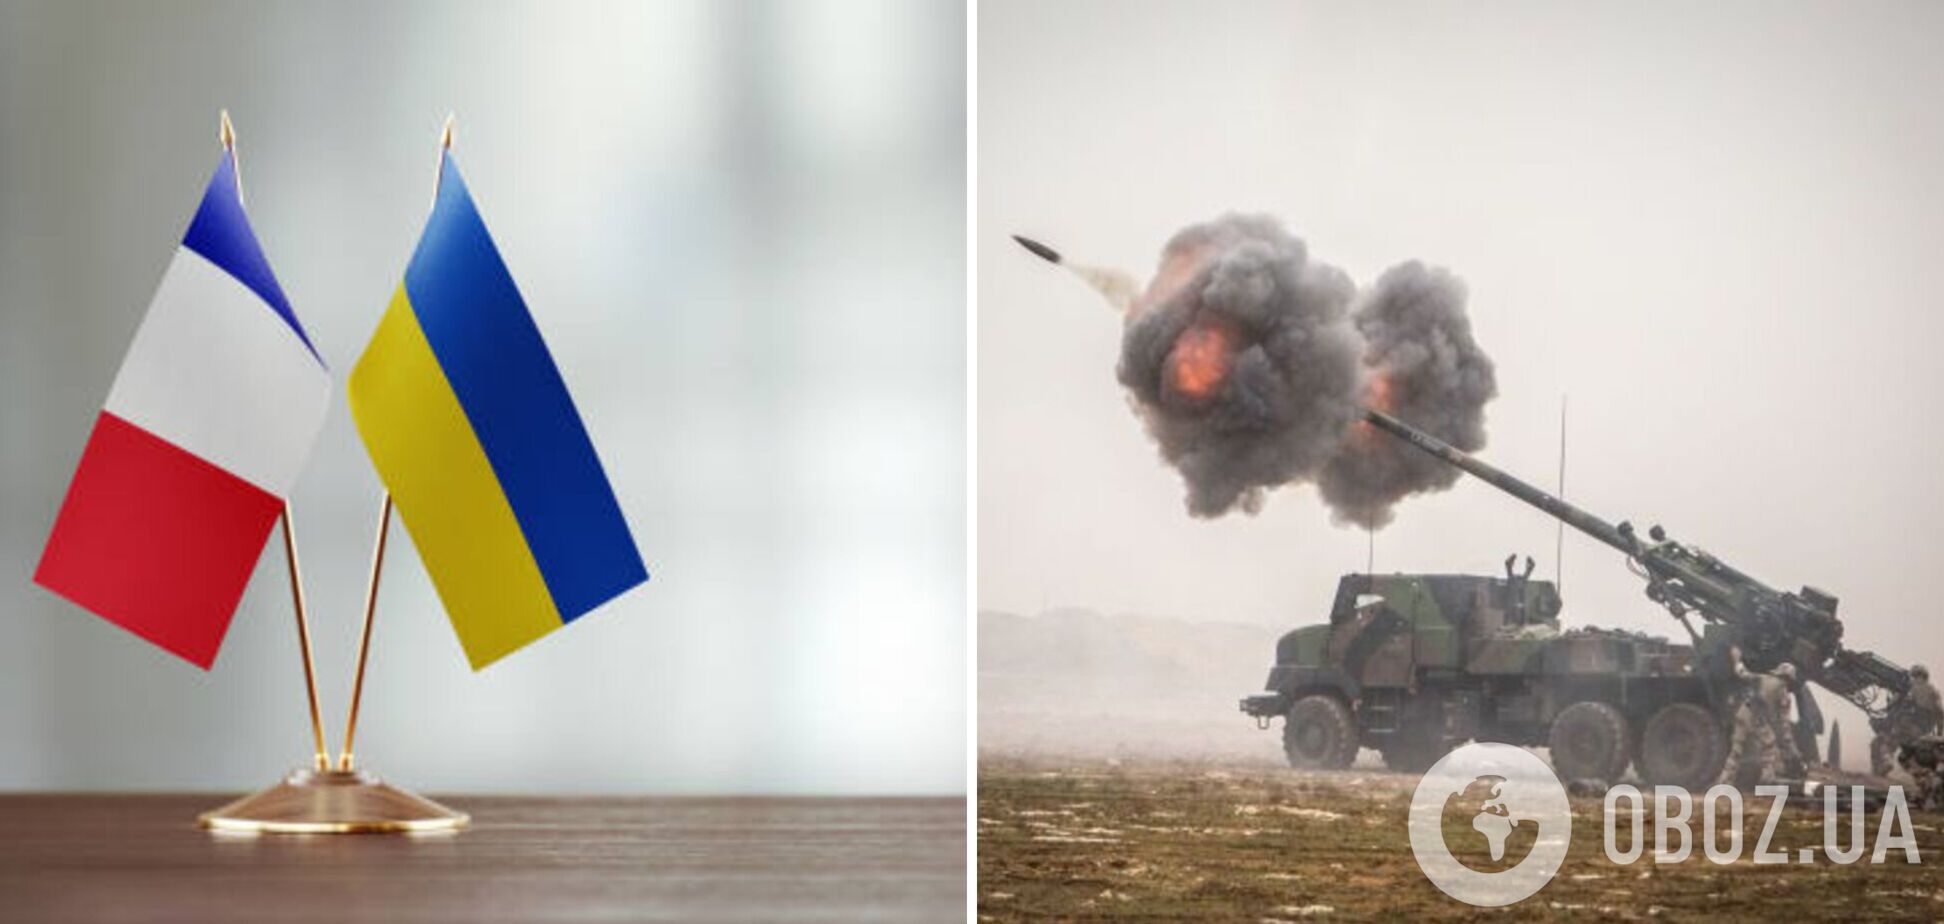 Франция возглавила 'артиллерийскую коалицию' для Украины: названы главные задачи